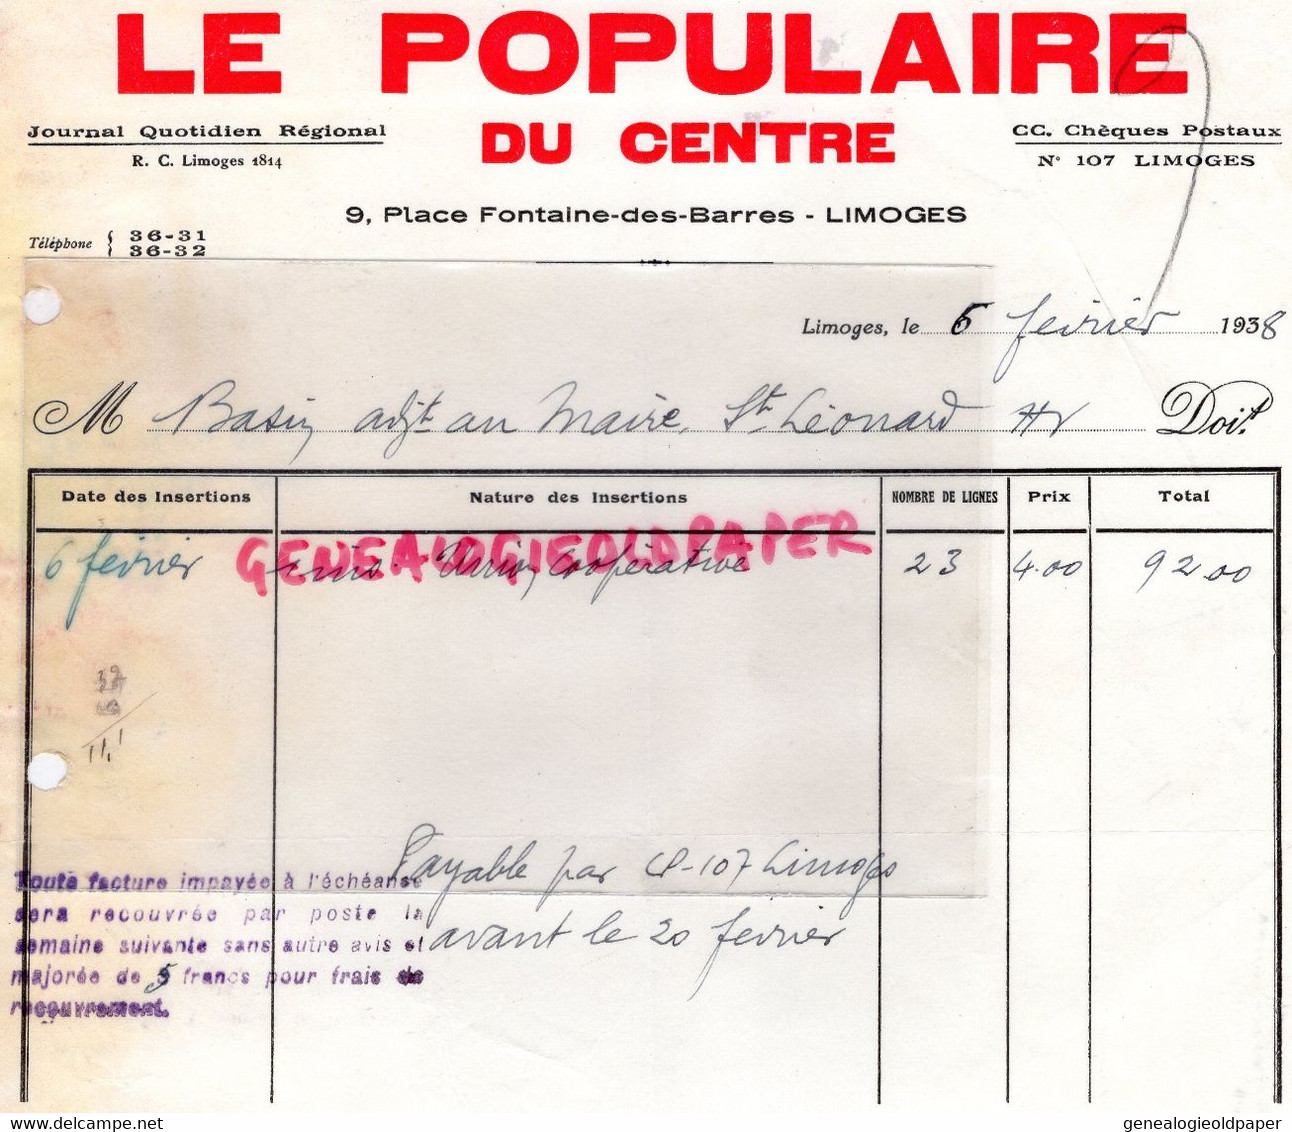 87- LIMOGES- FACTURE- LE POPULAIRE DU CENTRE-9 PLACE FONTAINE DES BARRES - 1938 - SAINT LEONARD DE NOBLAT - Druck & Papierwaren